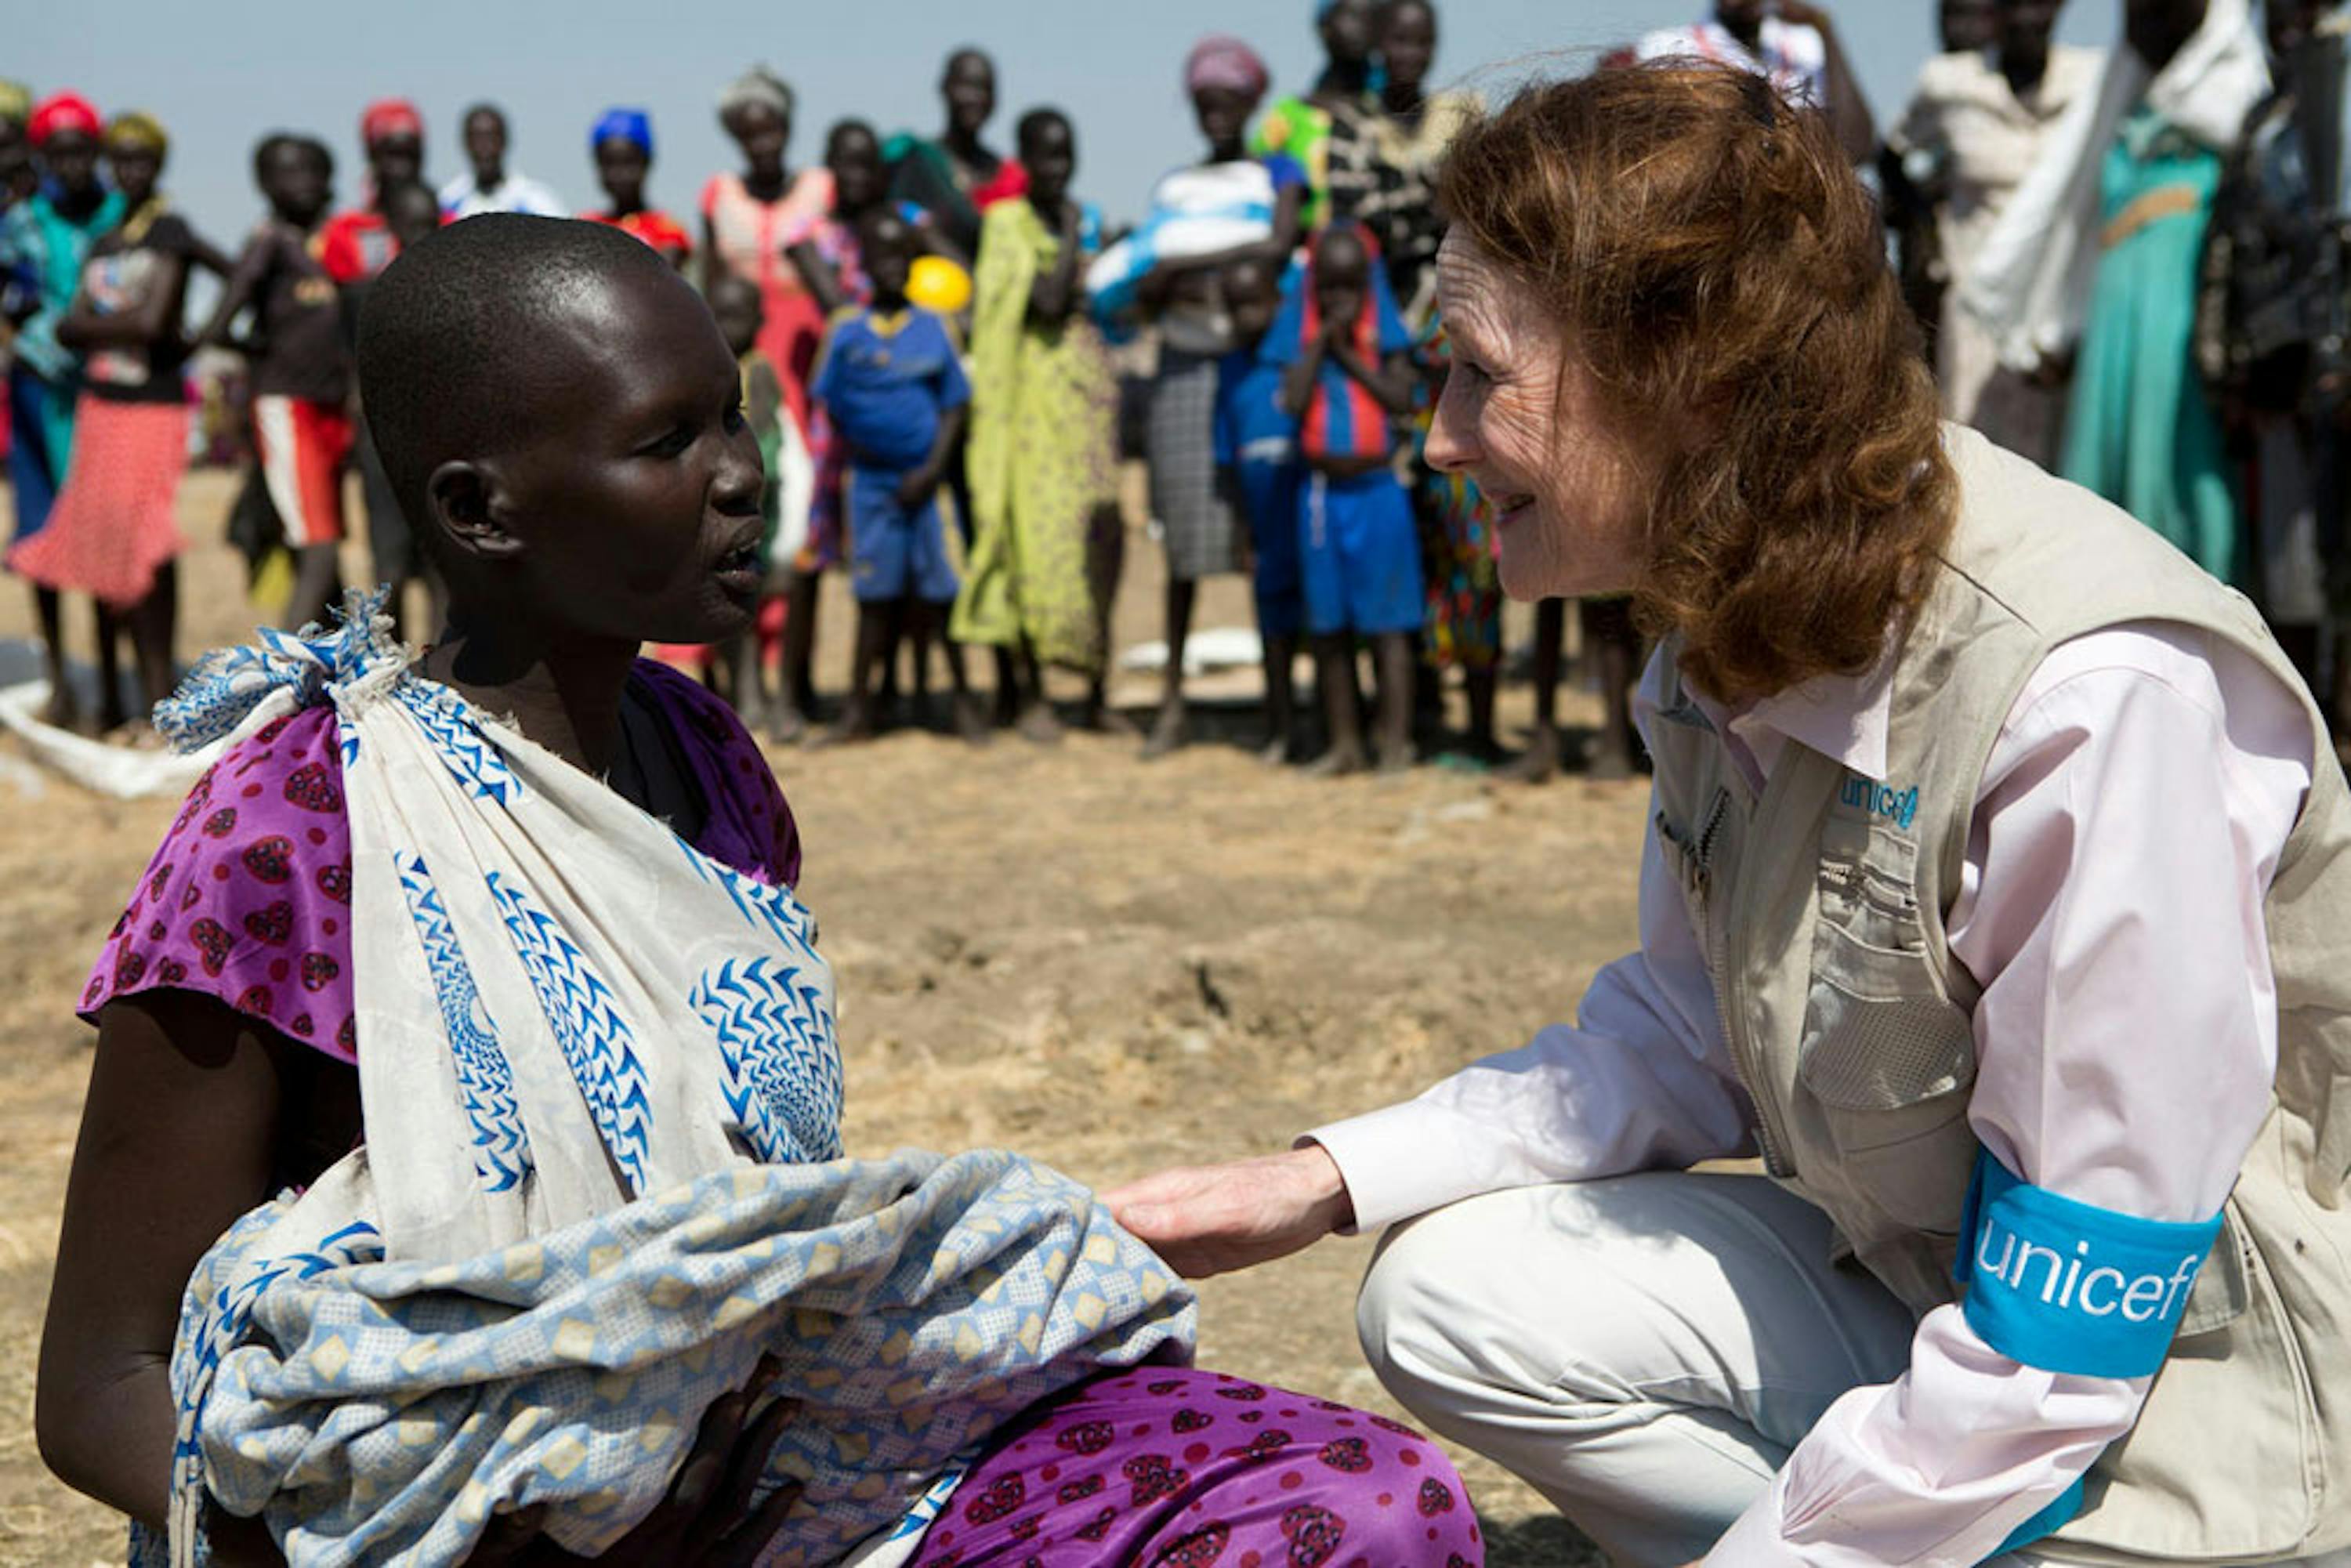 Henrietta Fore, nuovo Direttore UNICEF, parla con una giovane donna, Judjok, che ha appena ricevuto sapone e altri articoli per l'igiene durante una distribuzione organizzata dall'UNICEF a Ganyel (Sud Sudan) - ©UNICEF/UN0156708/Prinsloo